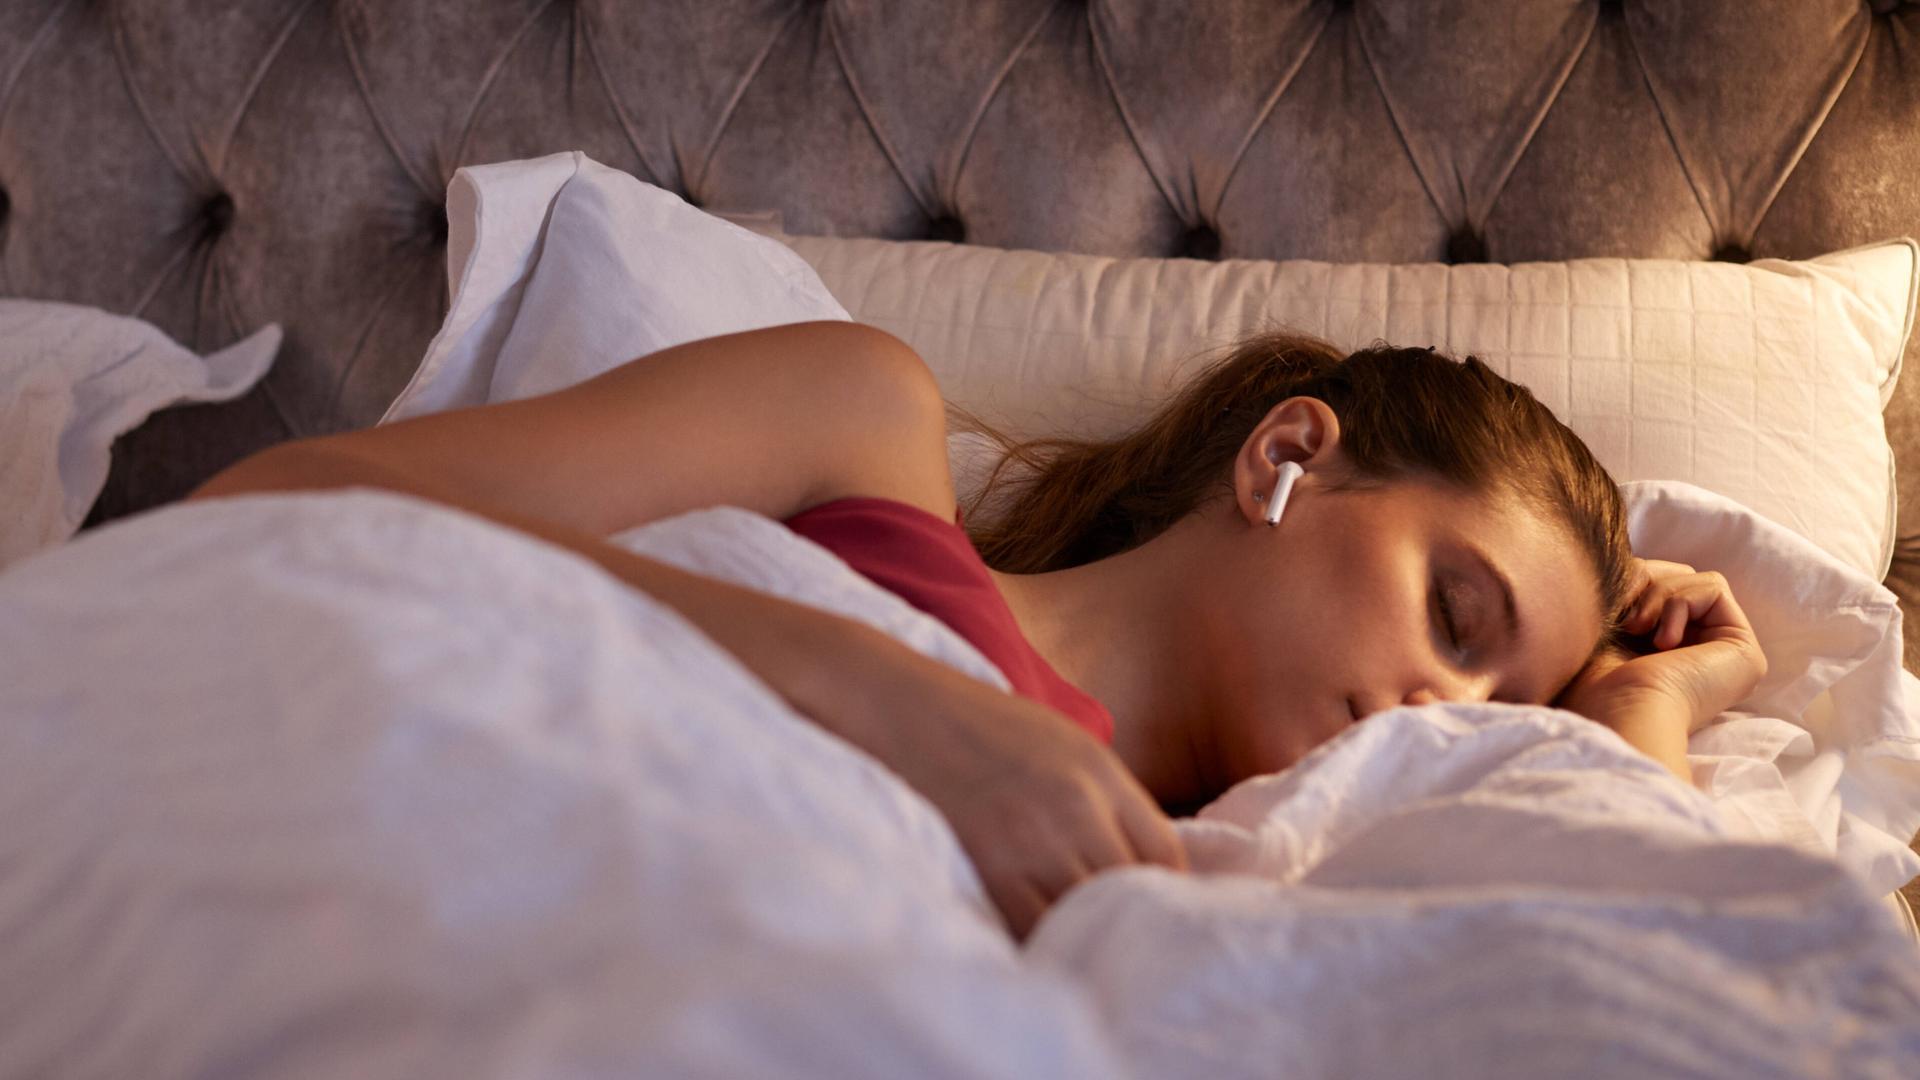 Eine junge Frau liegt mit geschlossenen Augen im Bett und hat sich eingekuschelt. In ihren Ohren hat sie einen weißen In-Ear-Kopfhörer.